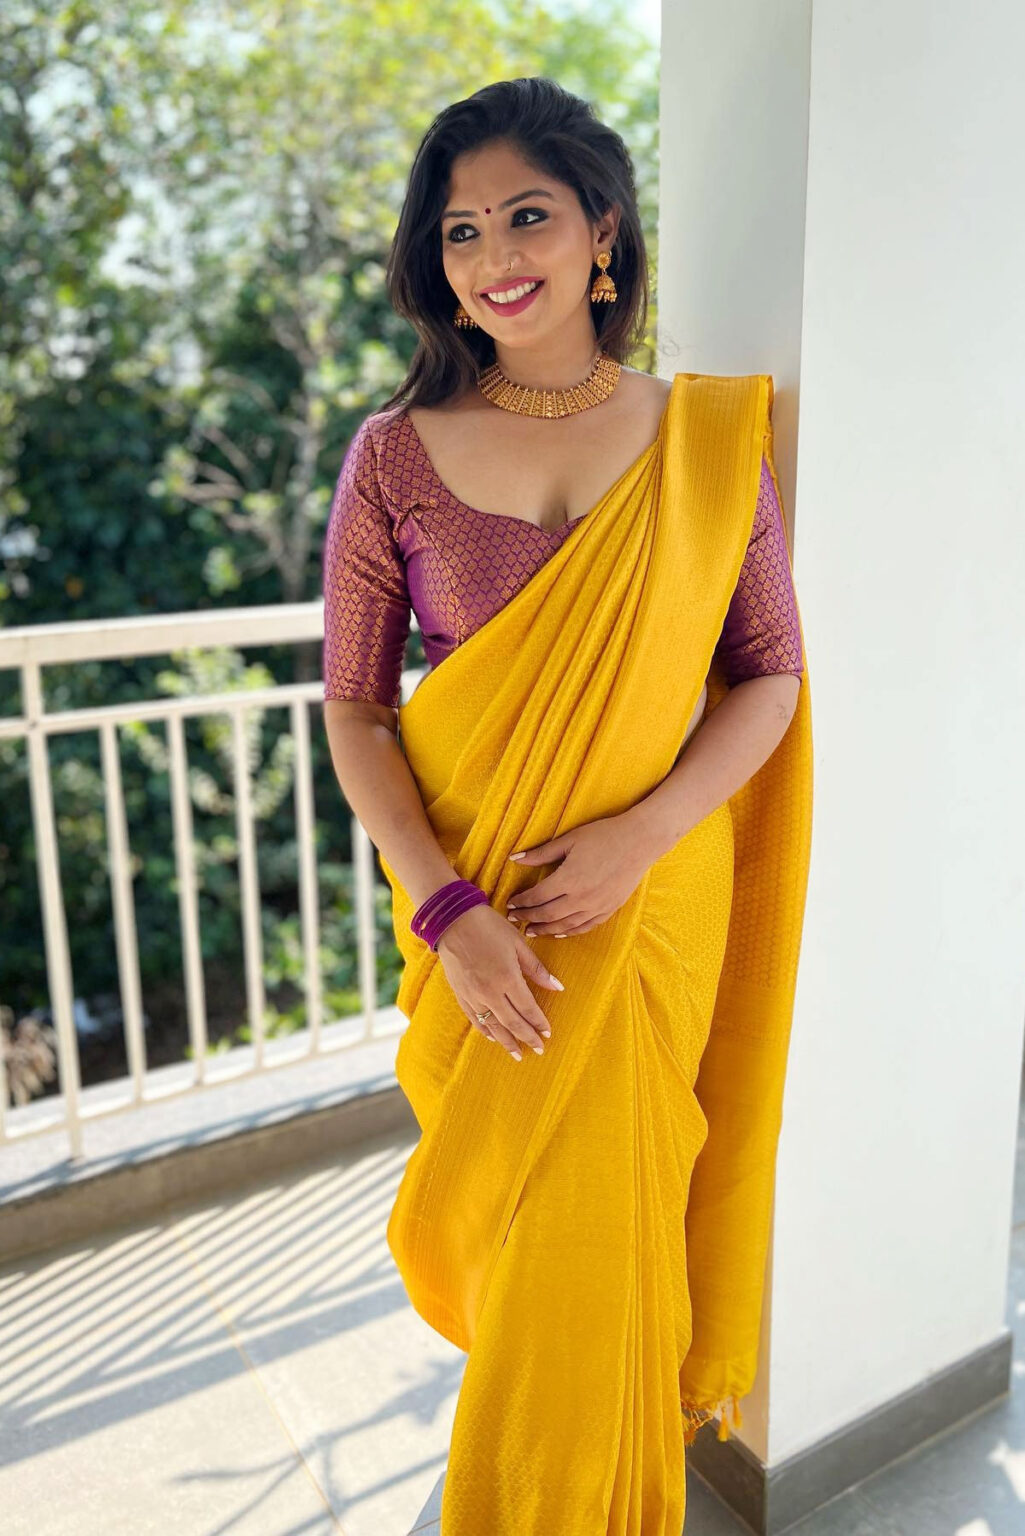 Roshni Vineeth in silk banarasi saree photos - South Indian Actress